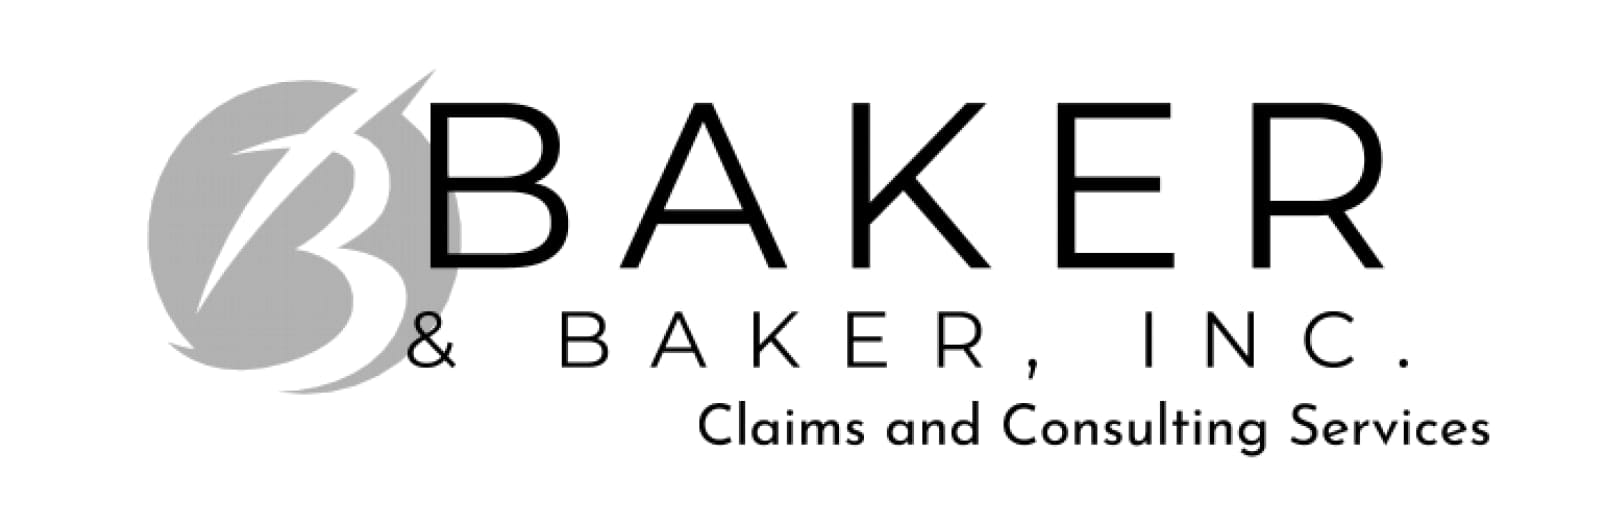 Baker & Baker, Inc.